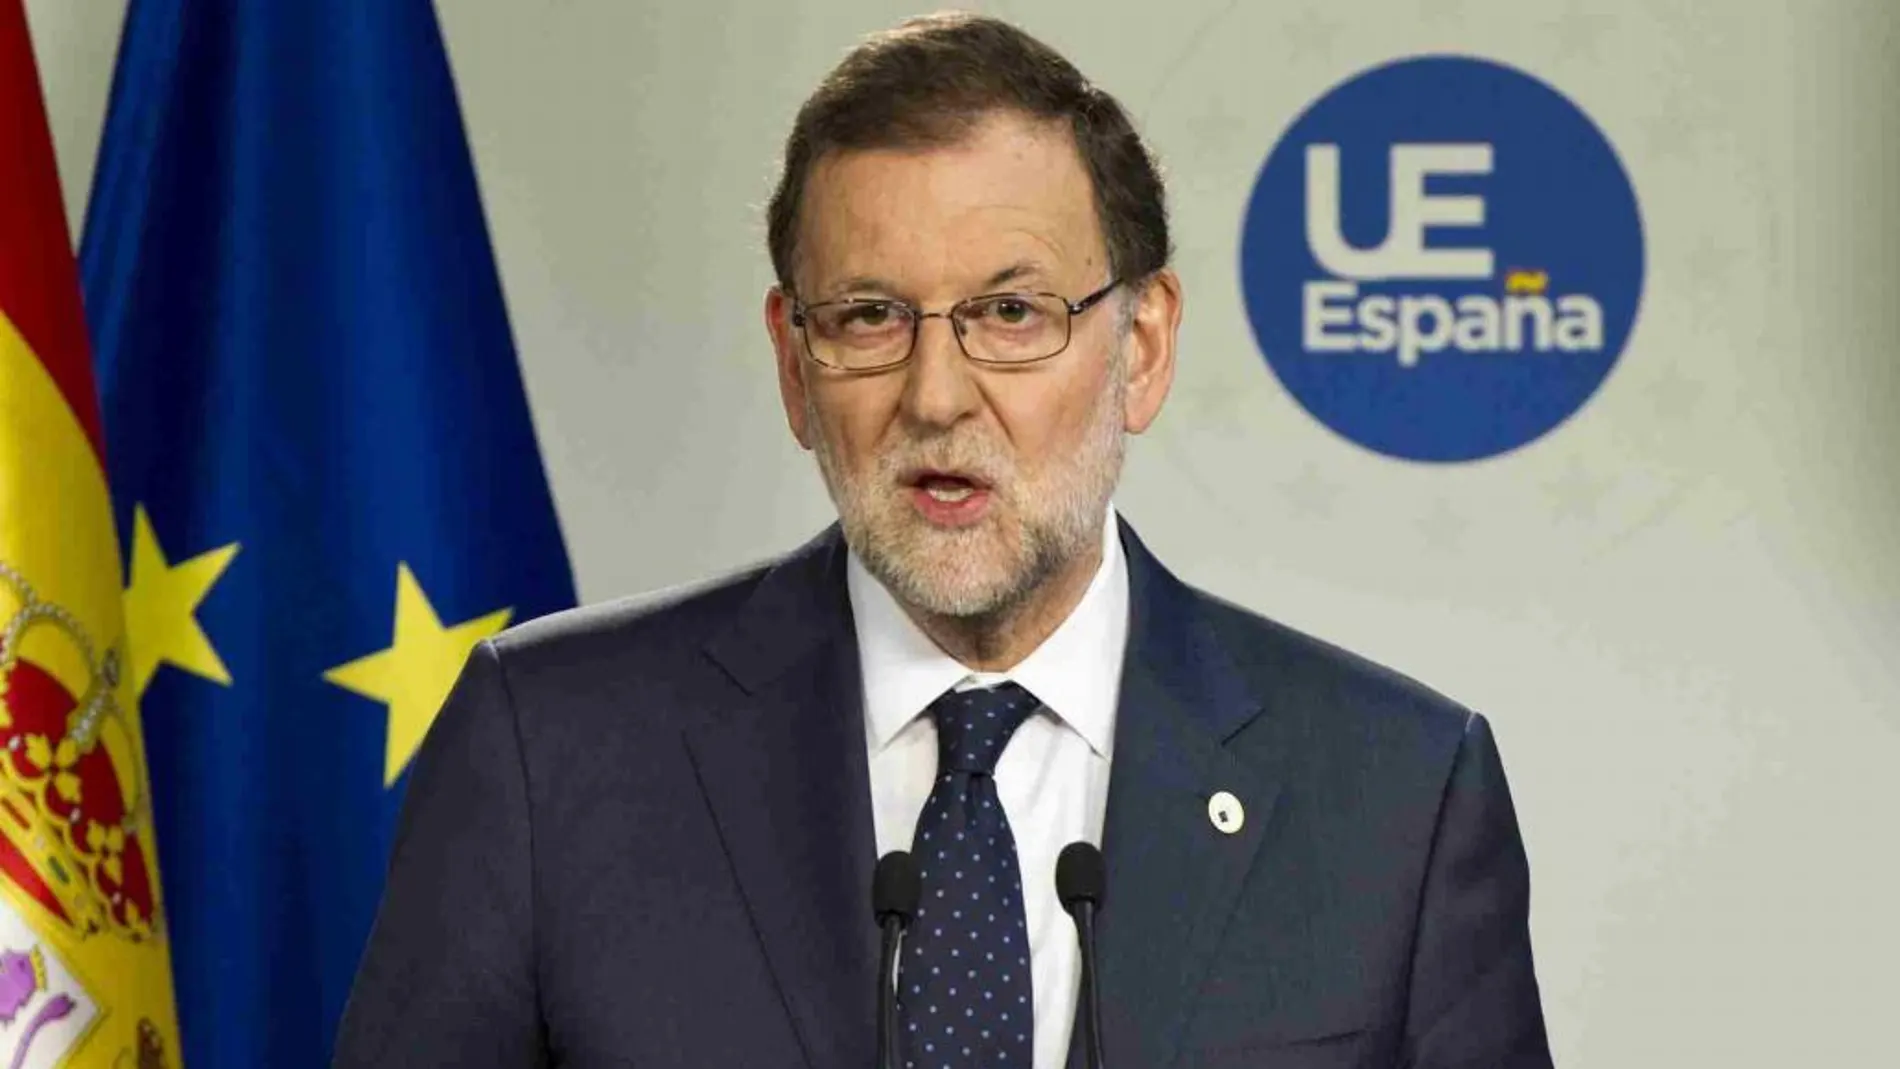 El presidente del Gobierno, Mariano Rajoy, durante la rueda de prensa ofrecida hoy en Bruselas, tras asistir a la reunión del Consejo Europeo.